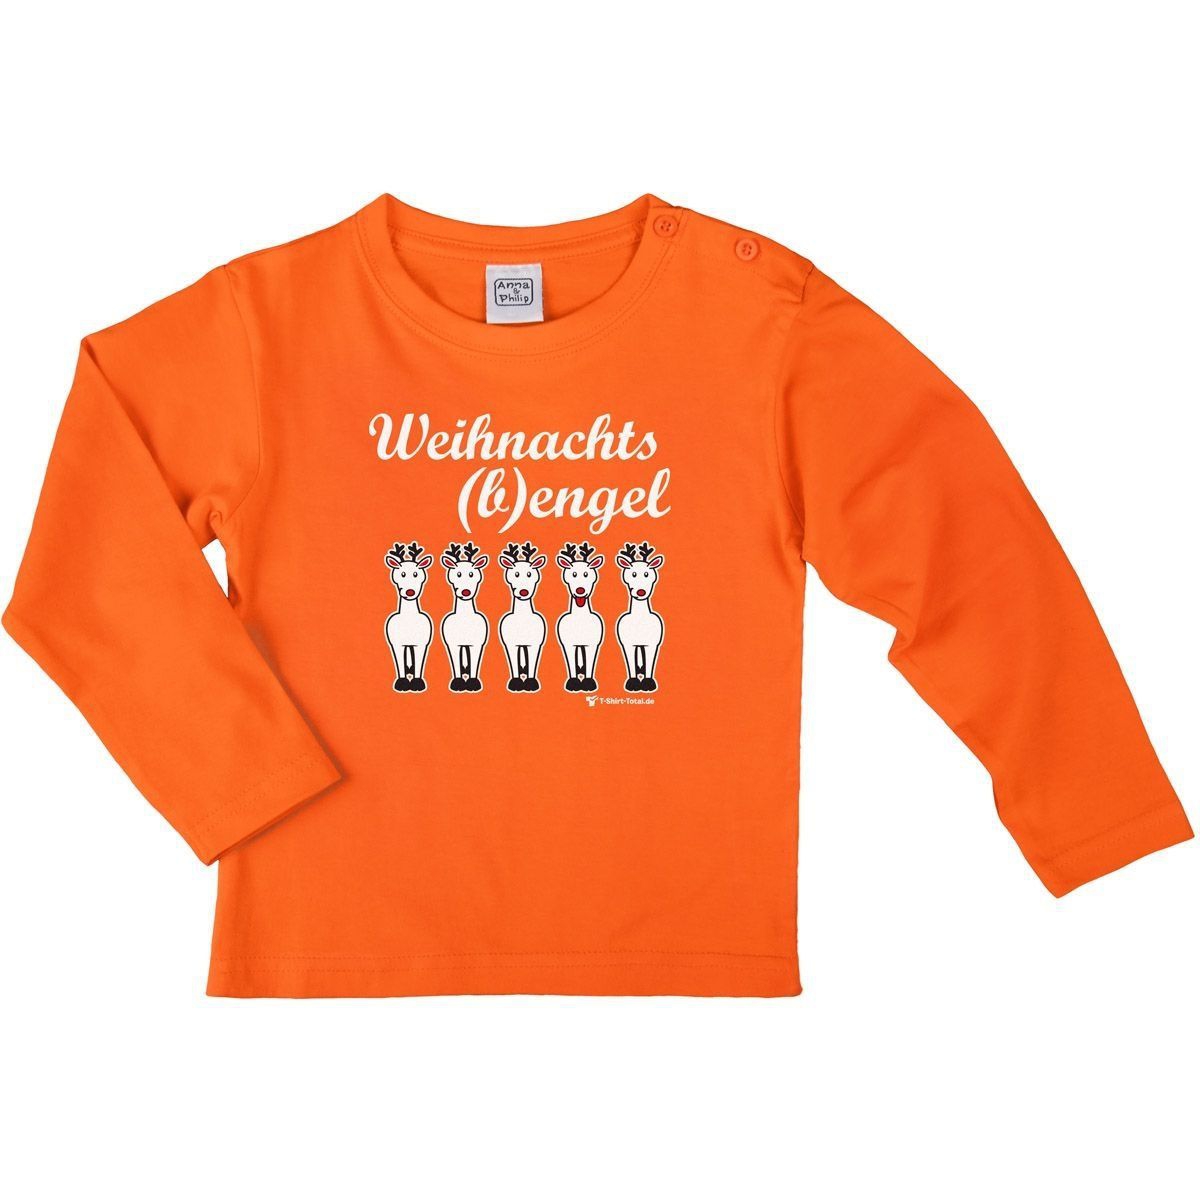 Weihnachtsbengel Kinder Langarm Shirt orange 56 / 62